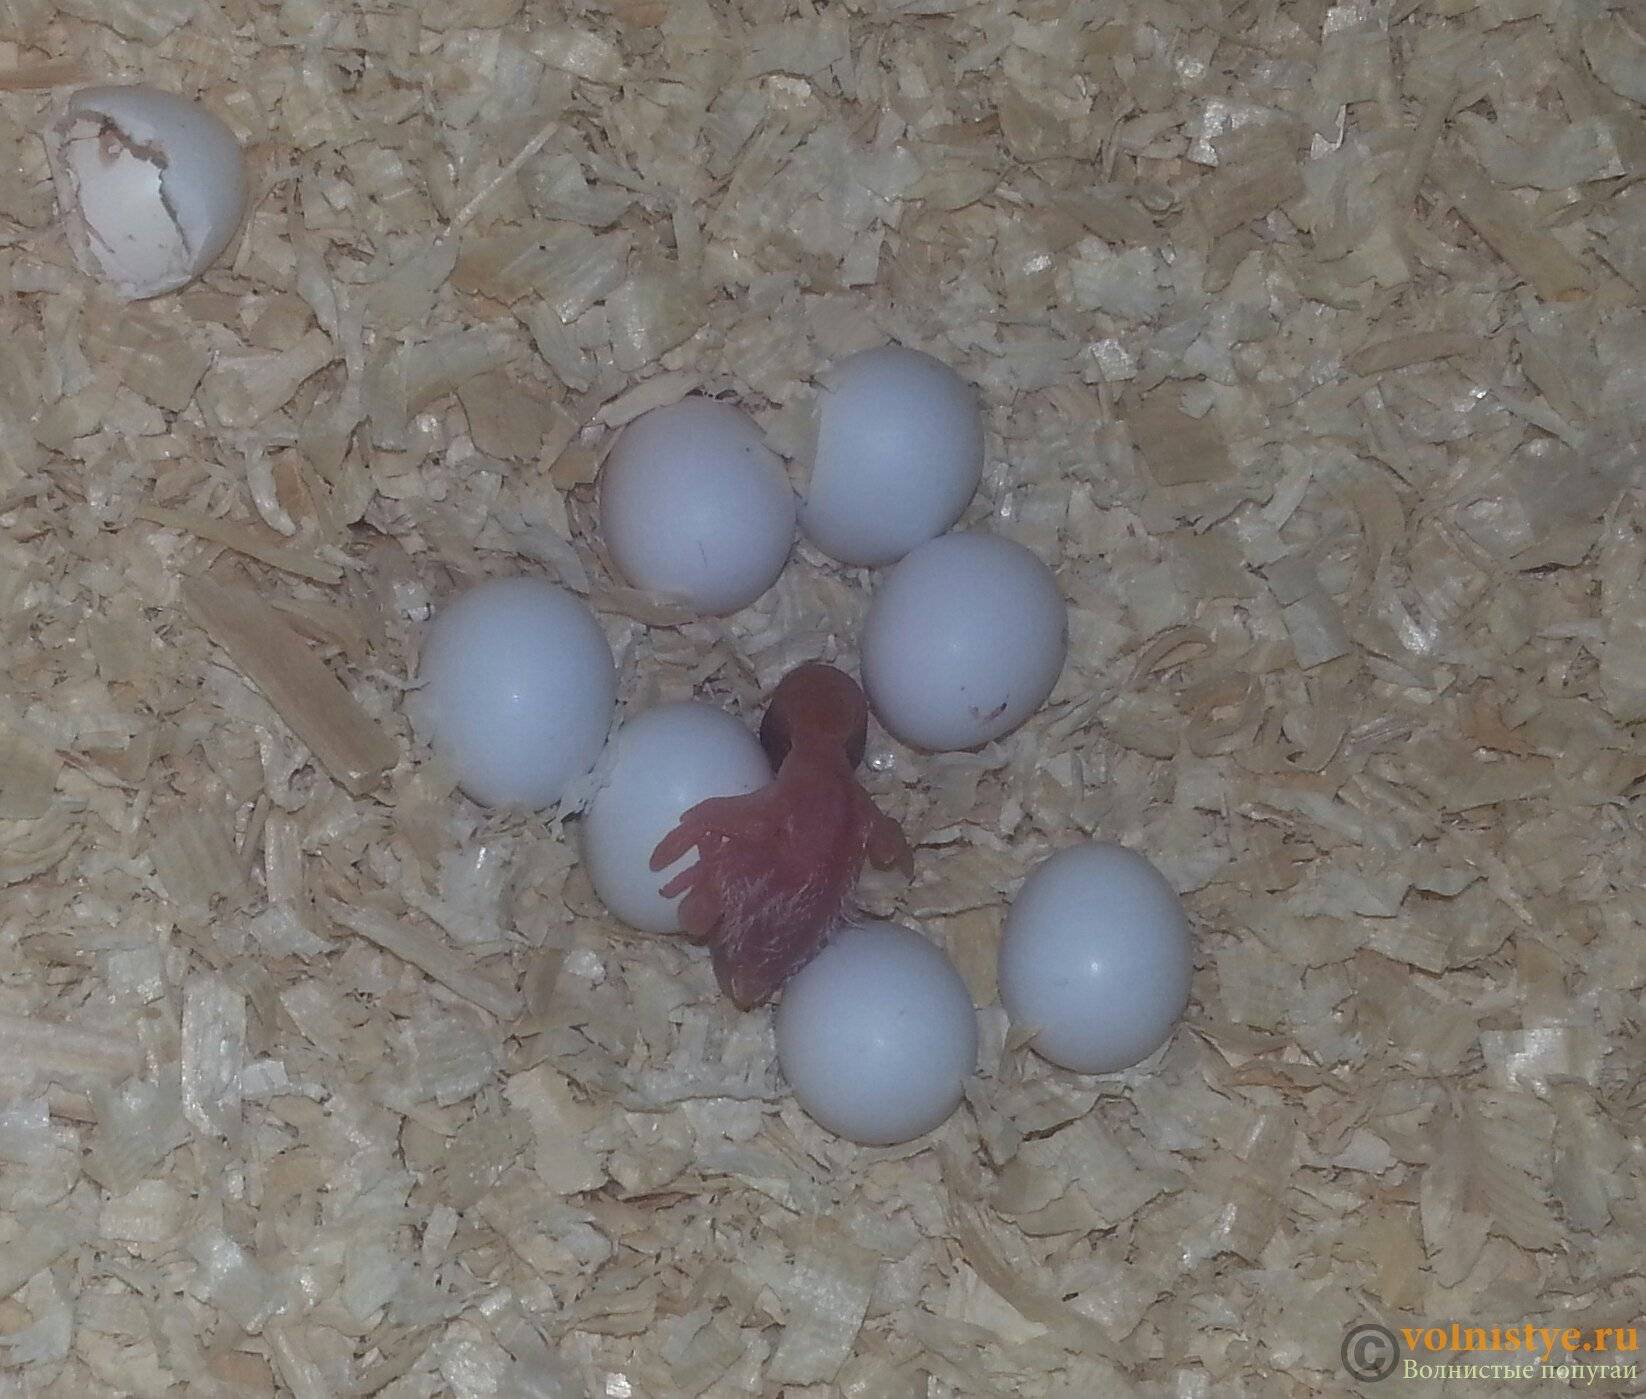 Про гнездование и разведение волнистых попугаев, размножение в домашних условиях - твой питомец